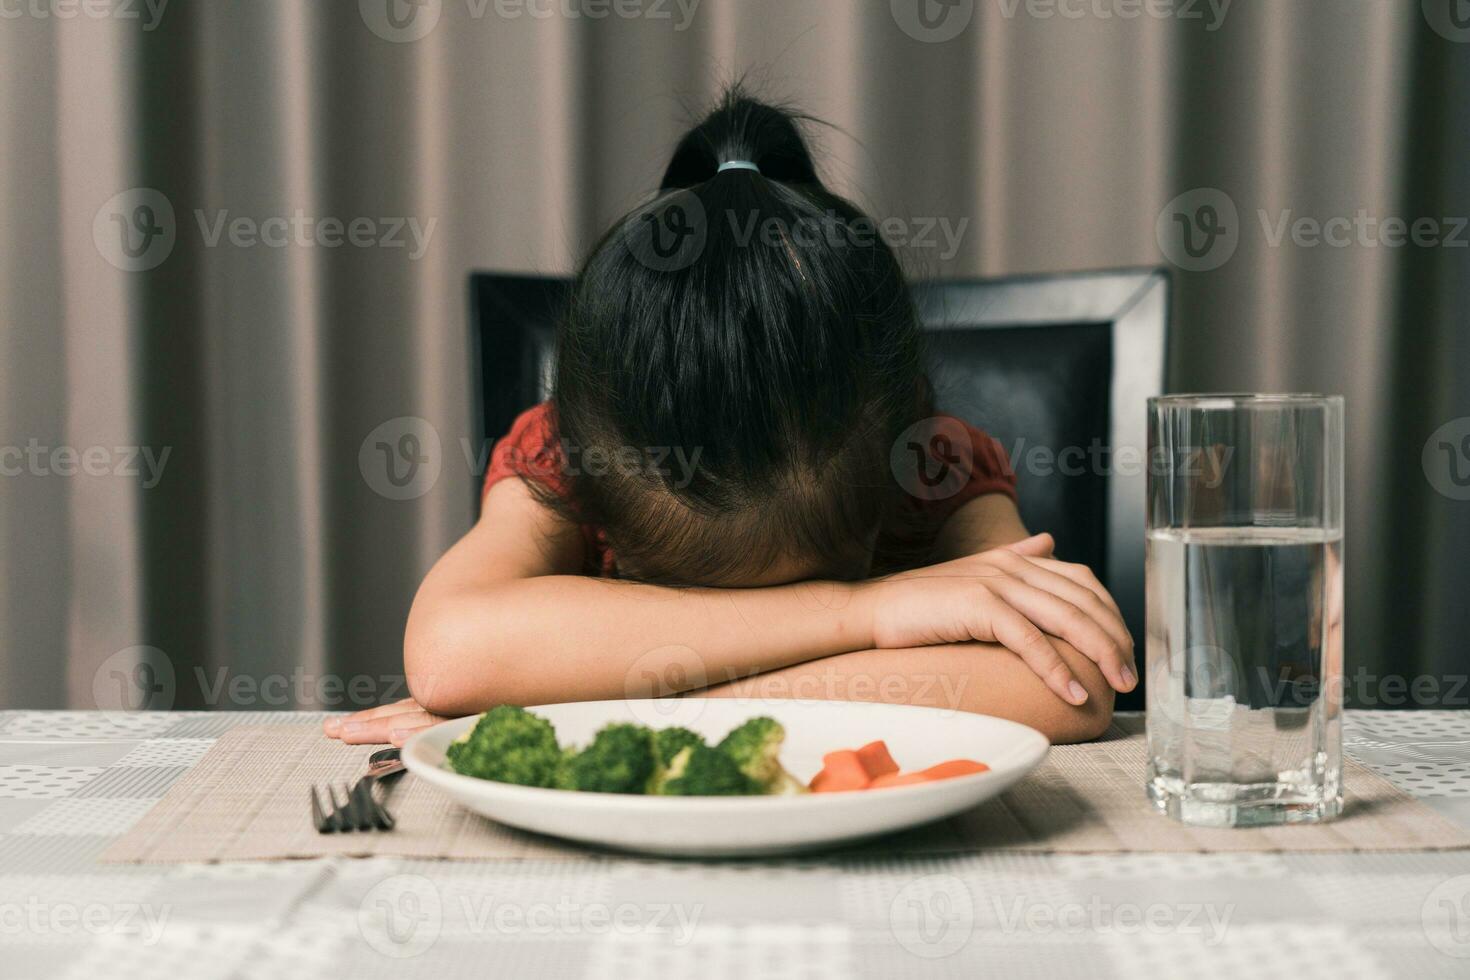 wenig süß Kind Mädchen ablehnen zu Essen gesund Gemüse. Kinder tun nicht mögen zu Essen Gemüse. foto